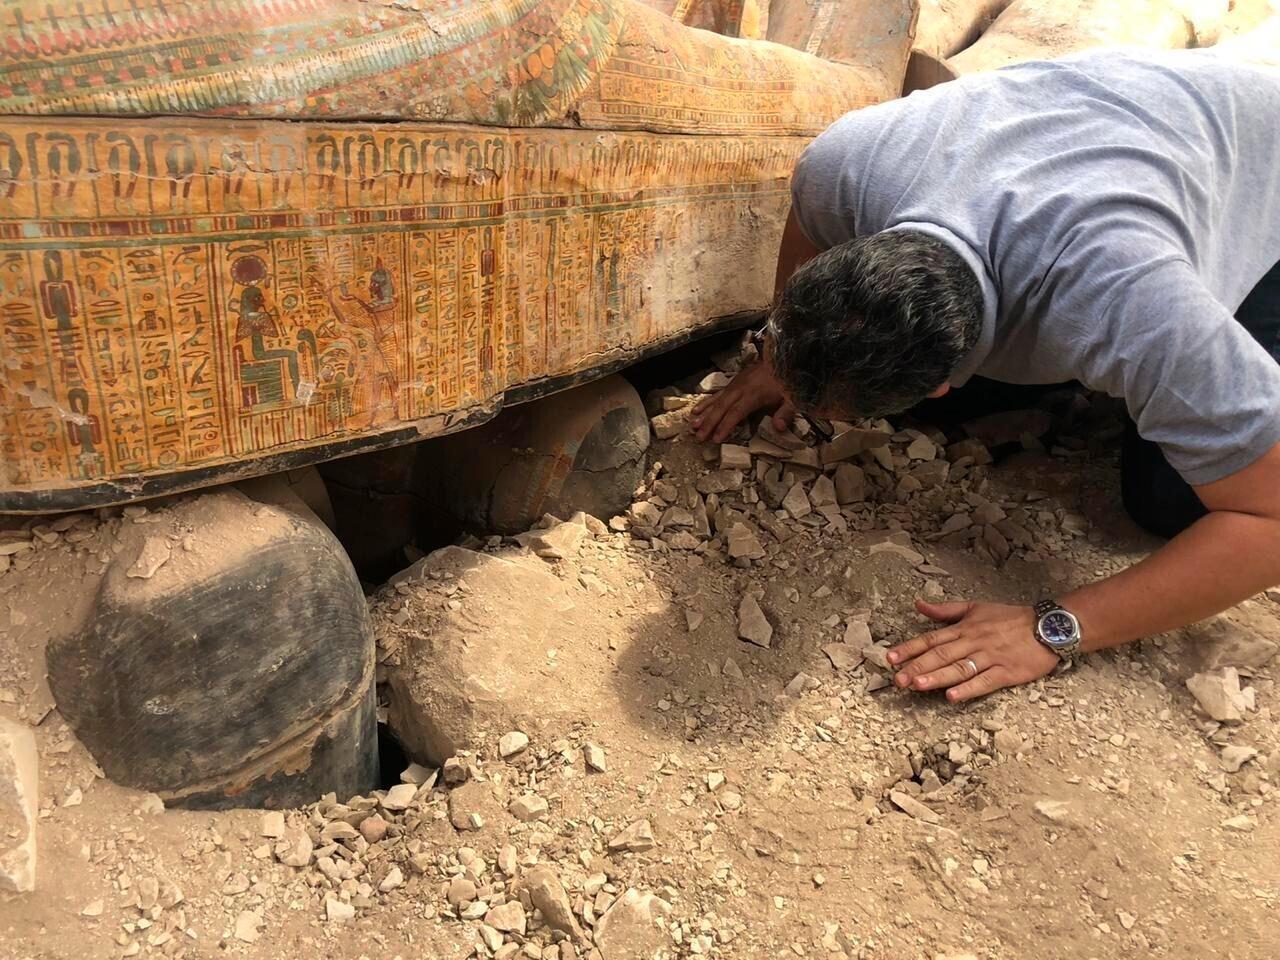 Mısırda son yılların en büyük arkeolojik keşfi yapıldı